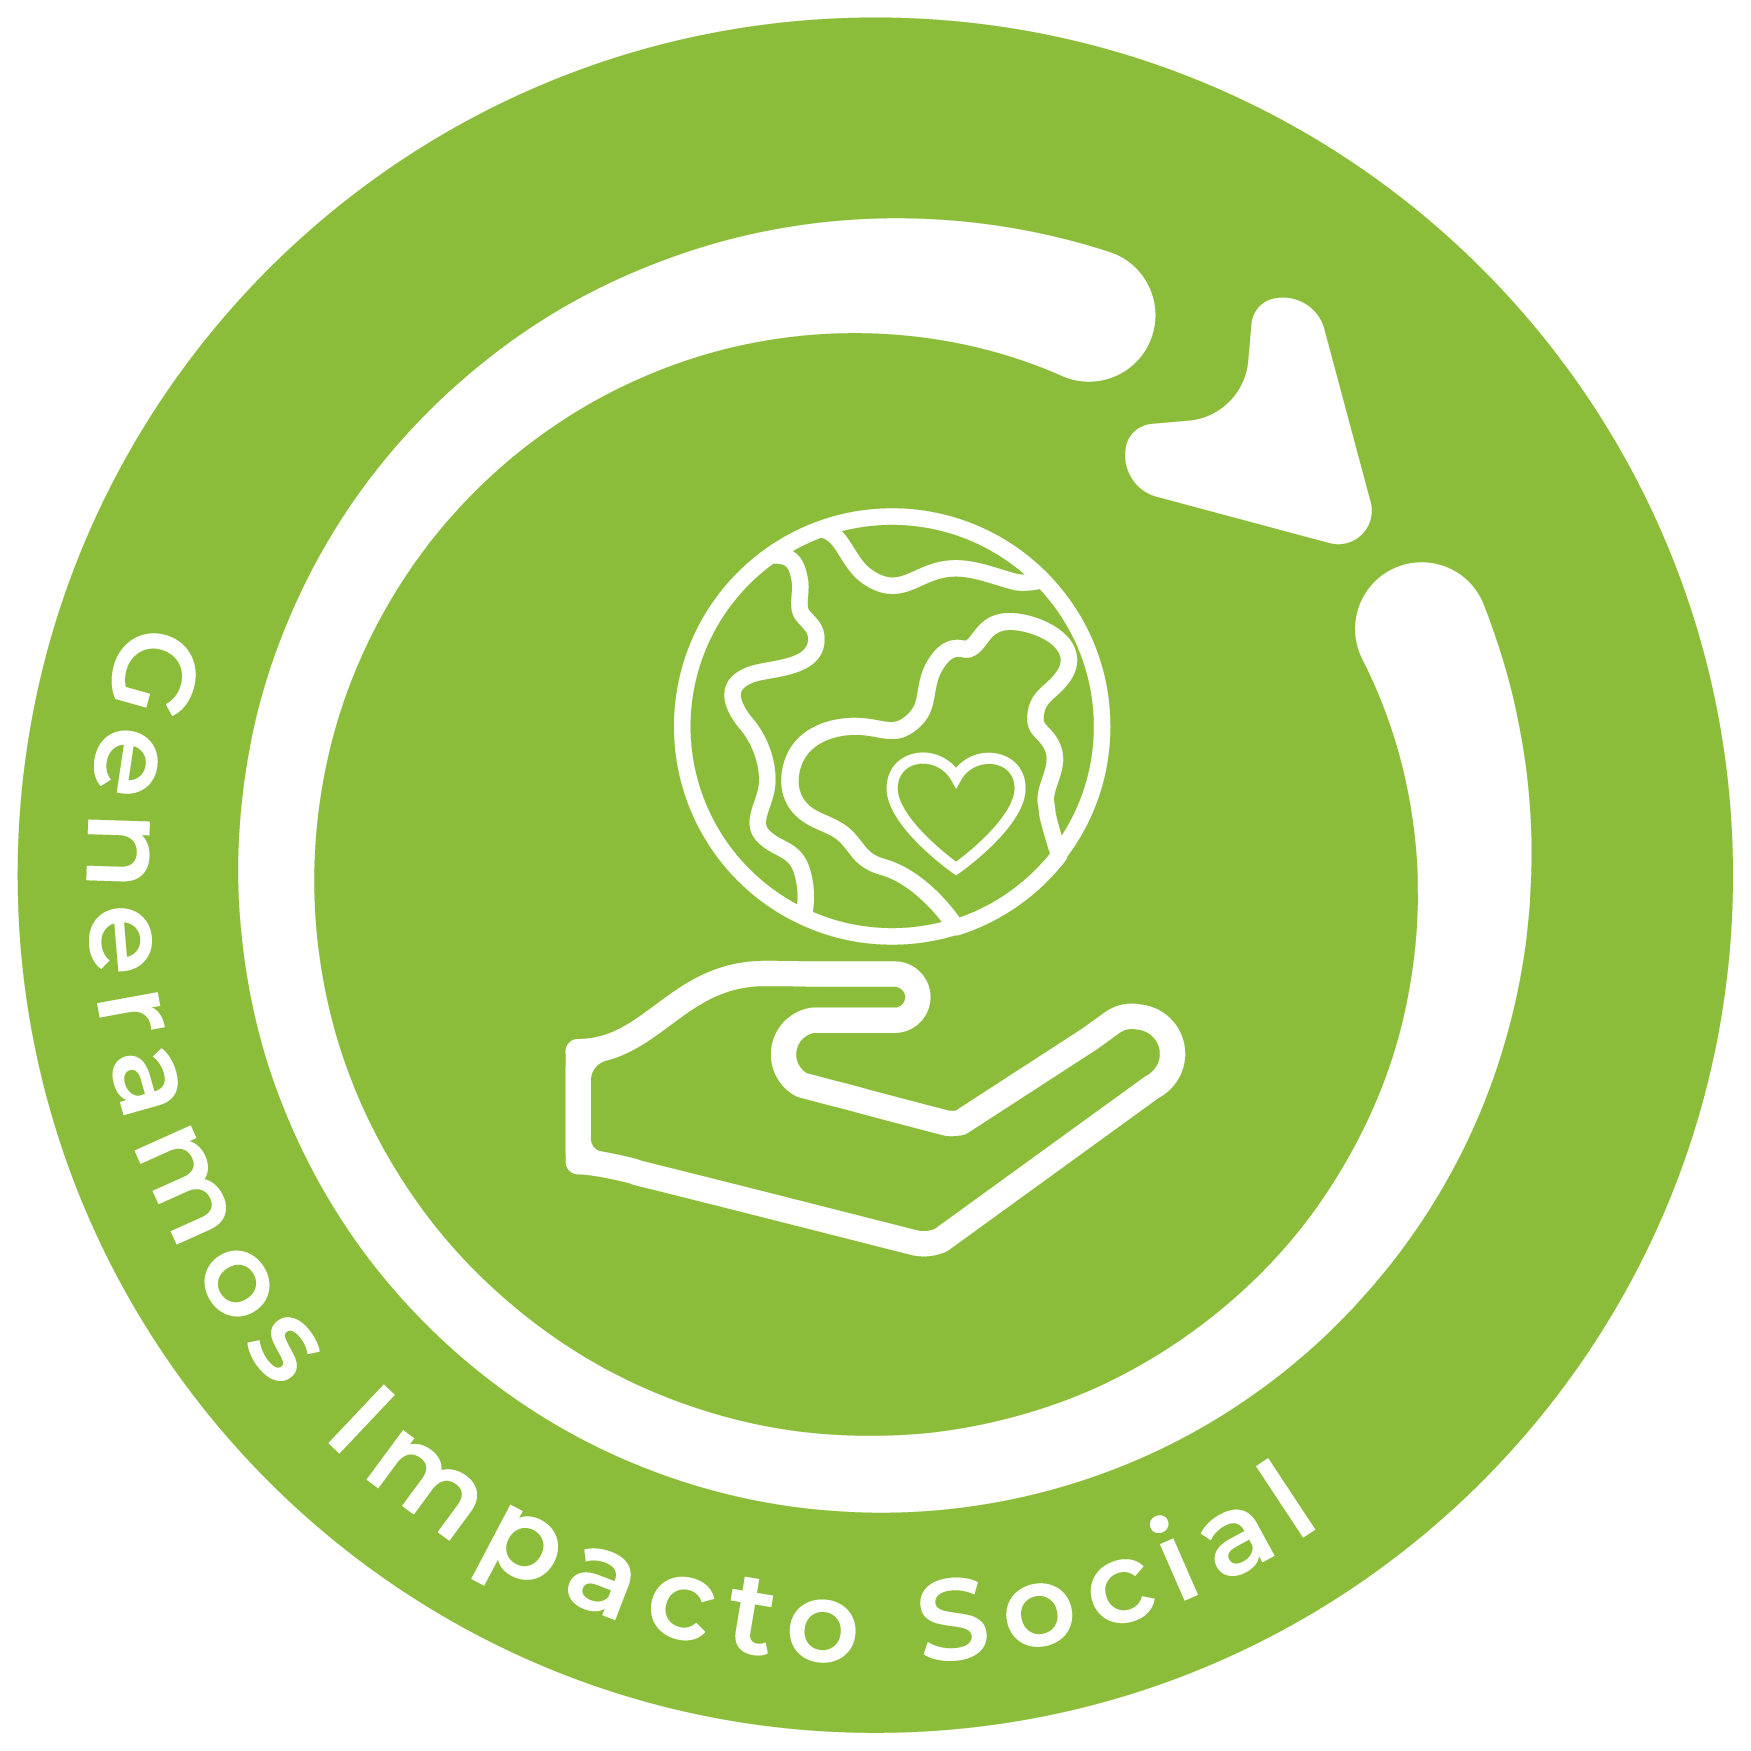 Generamos impacto social